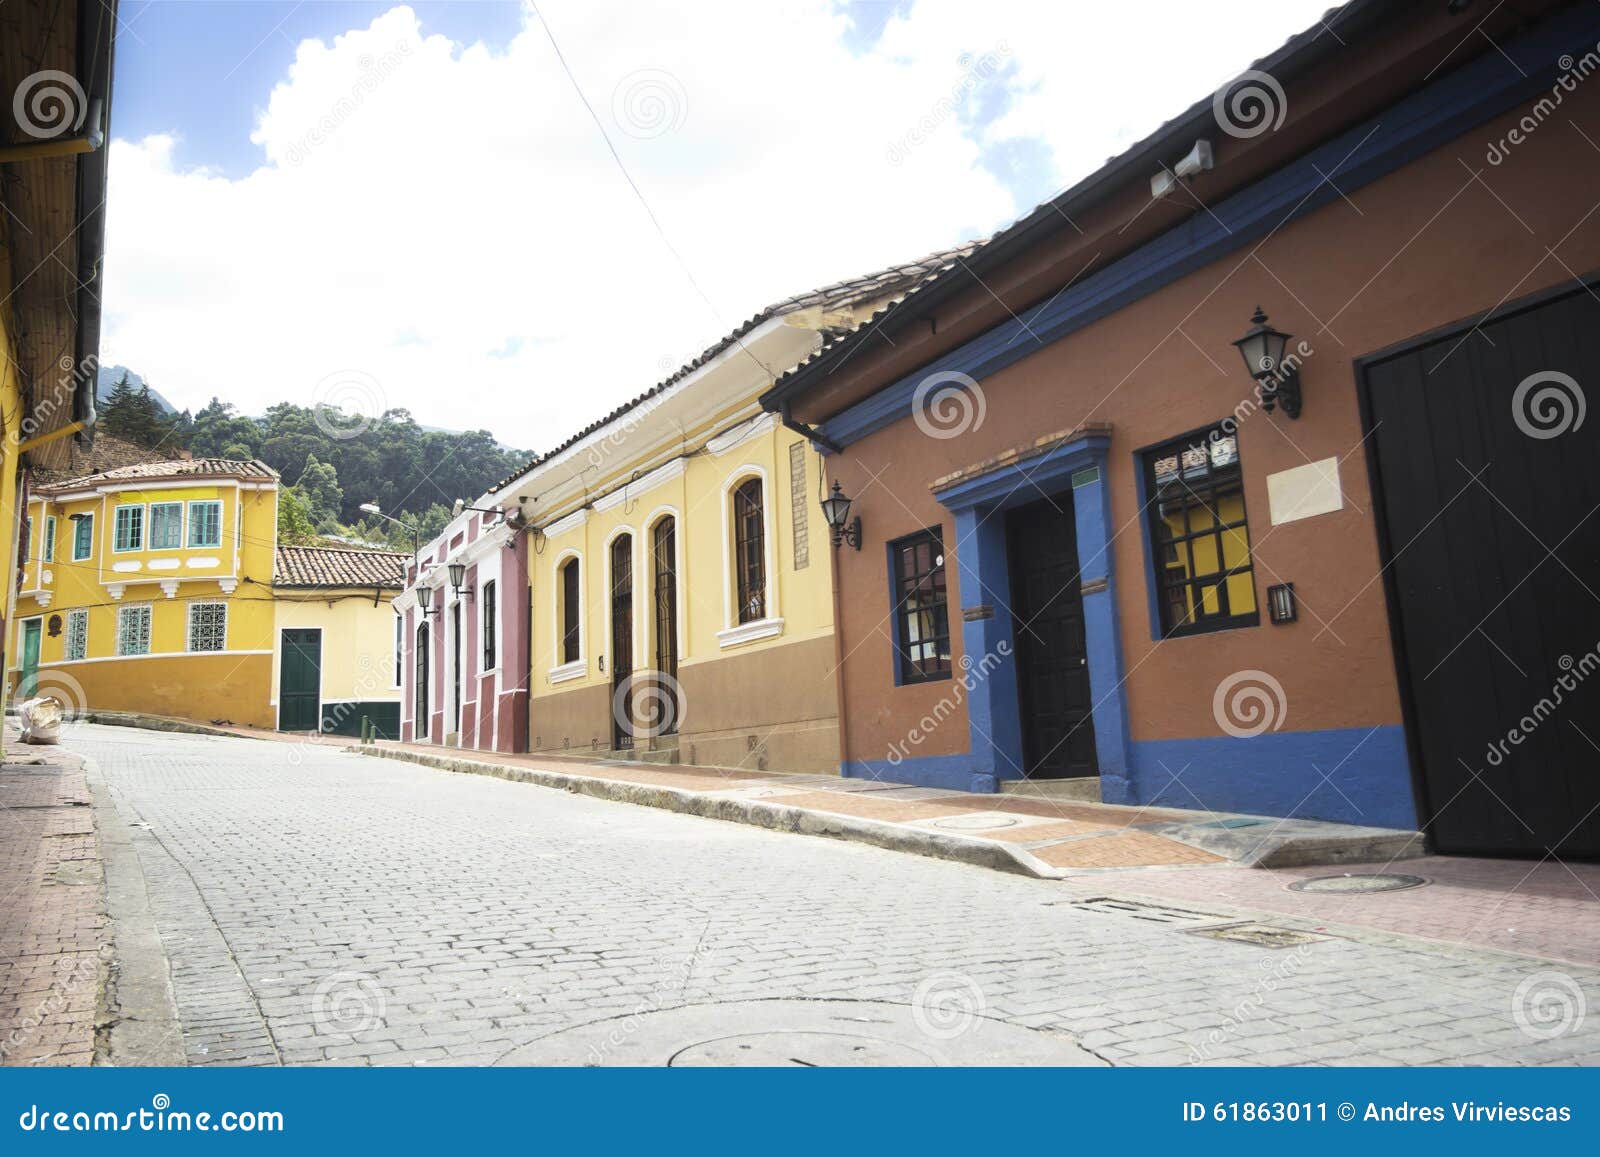 colorful houses at la candelaria in bogotÃÂ¡